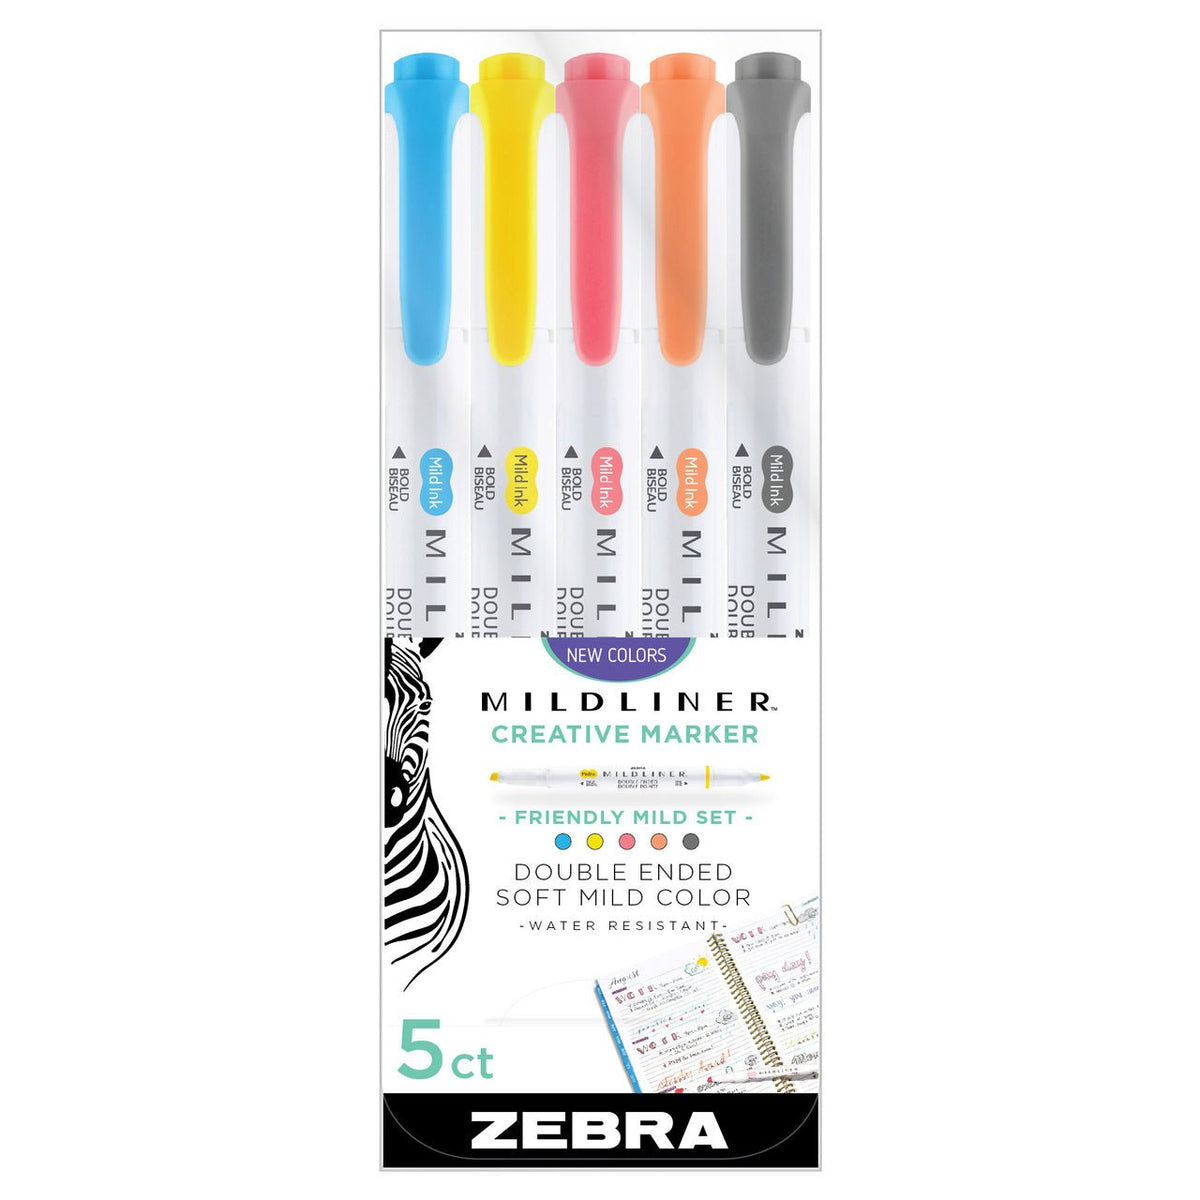 Zebra Midliner Creative Marker 5-Count | Neutral Set